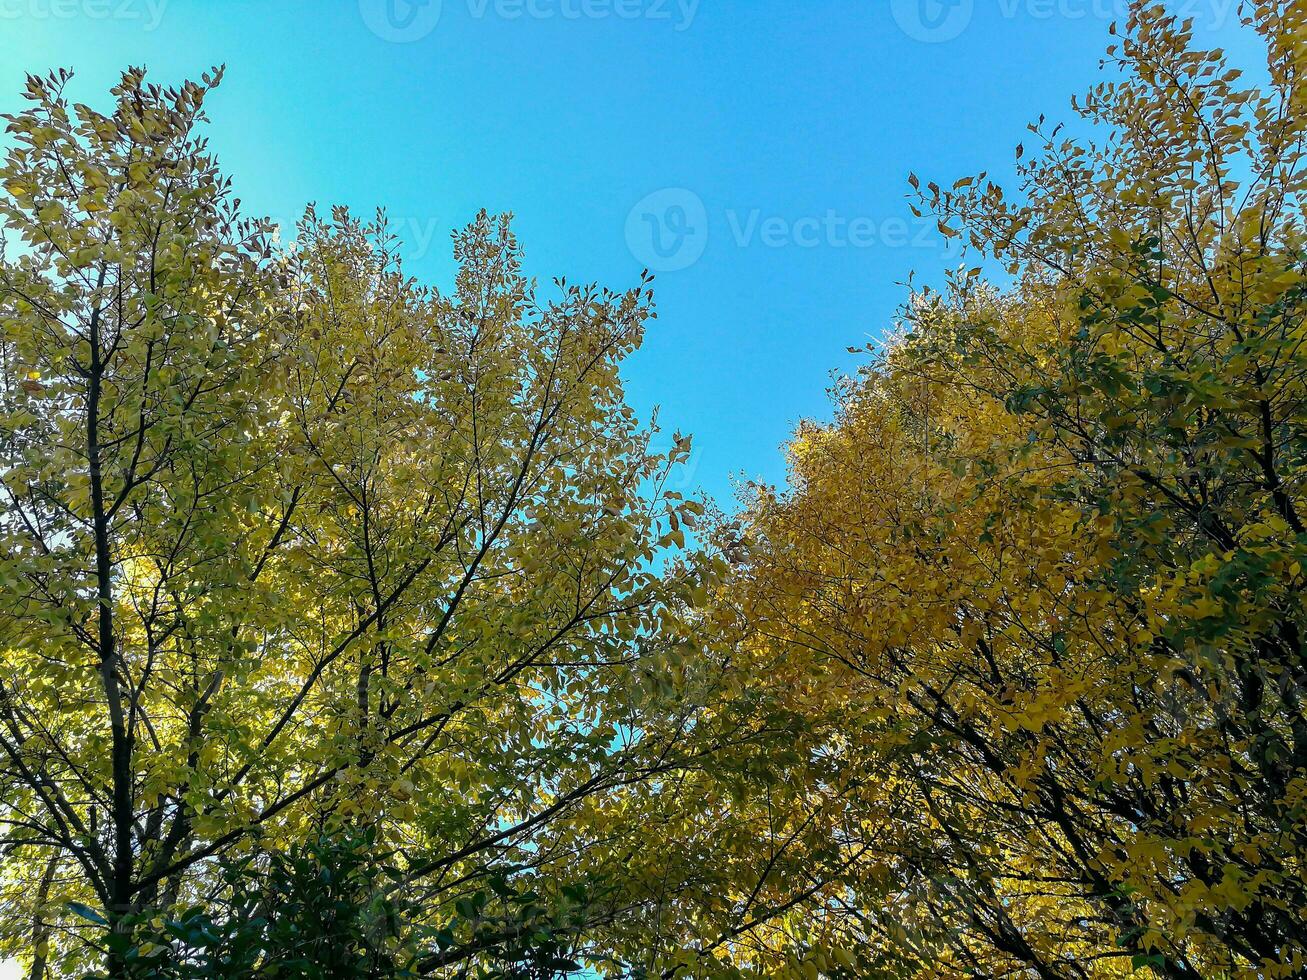 de natuurlijk schoonheid van herfst kleuren en vallend bladeren foto